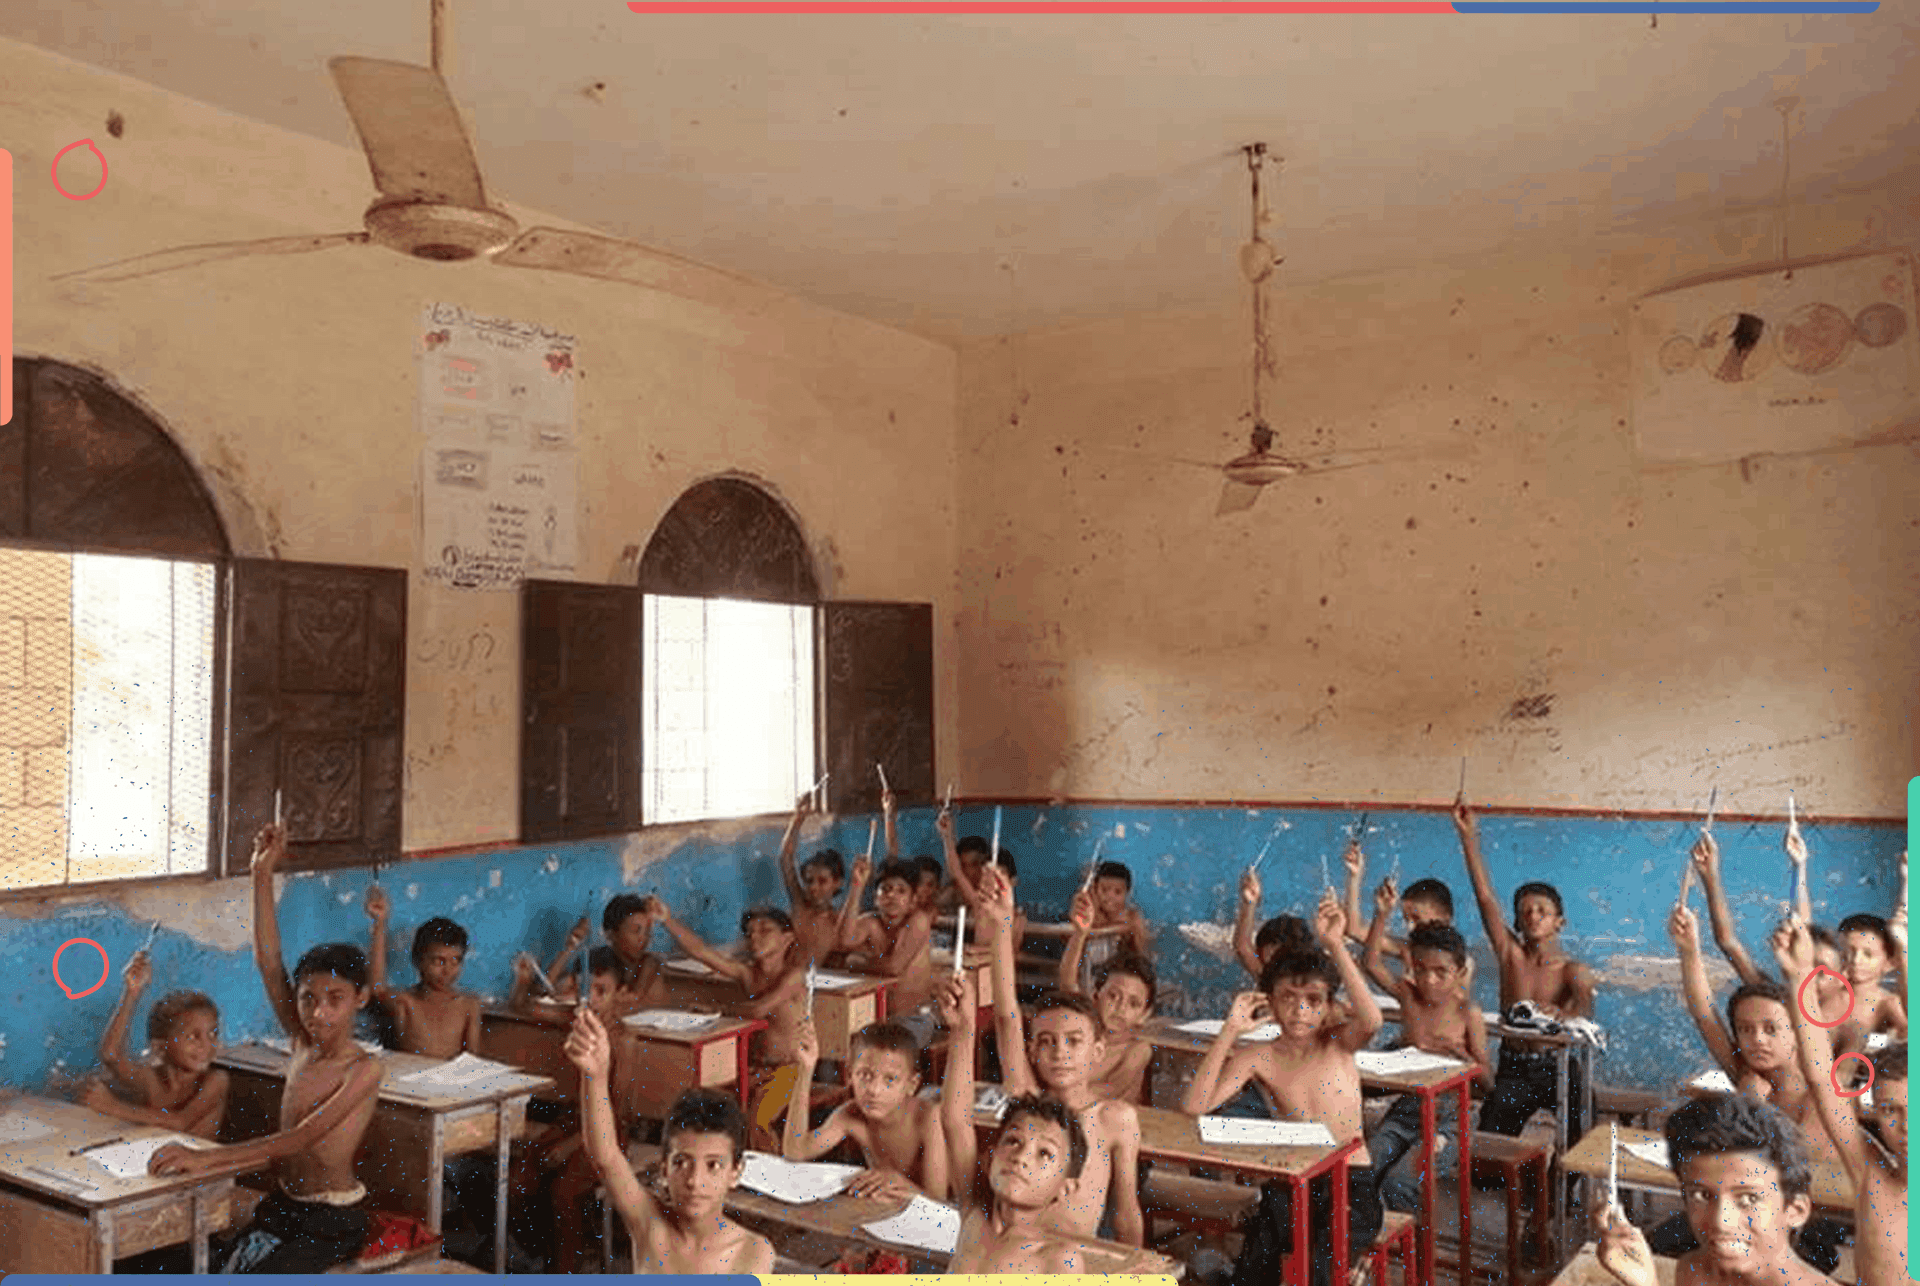 طلاب مدارس في الحديدة